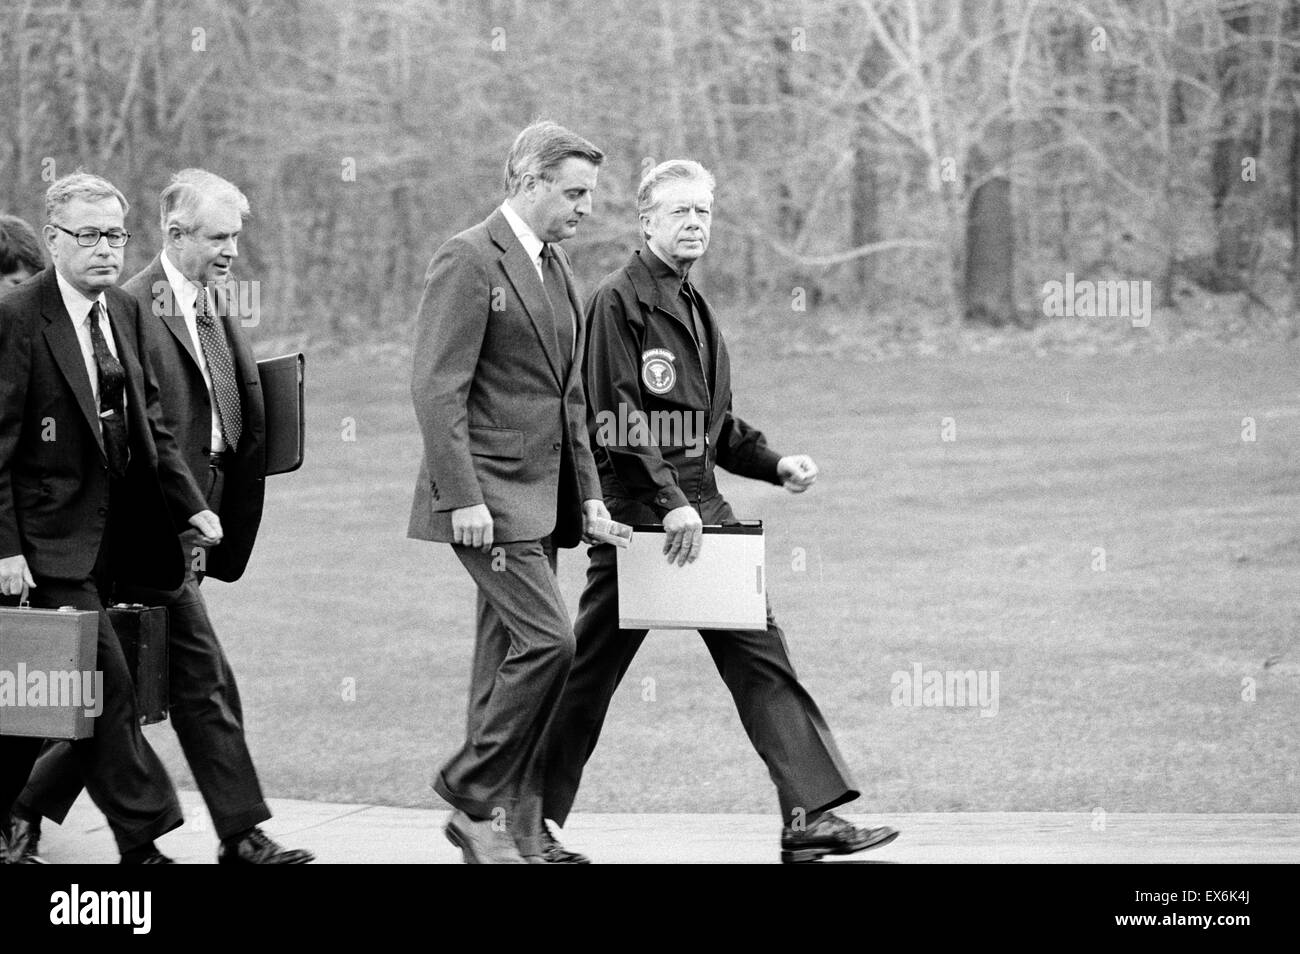 Photographie du Président Jimmy Carter, vice-président Walter Mondale, Secrétaire d'État Cyrus Vance et le Secrétaire de la Défense Harold Brown sur leur façon de répondre au sujet de la crise des otages en Iran. Datée 1979 Banque D'Images